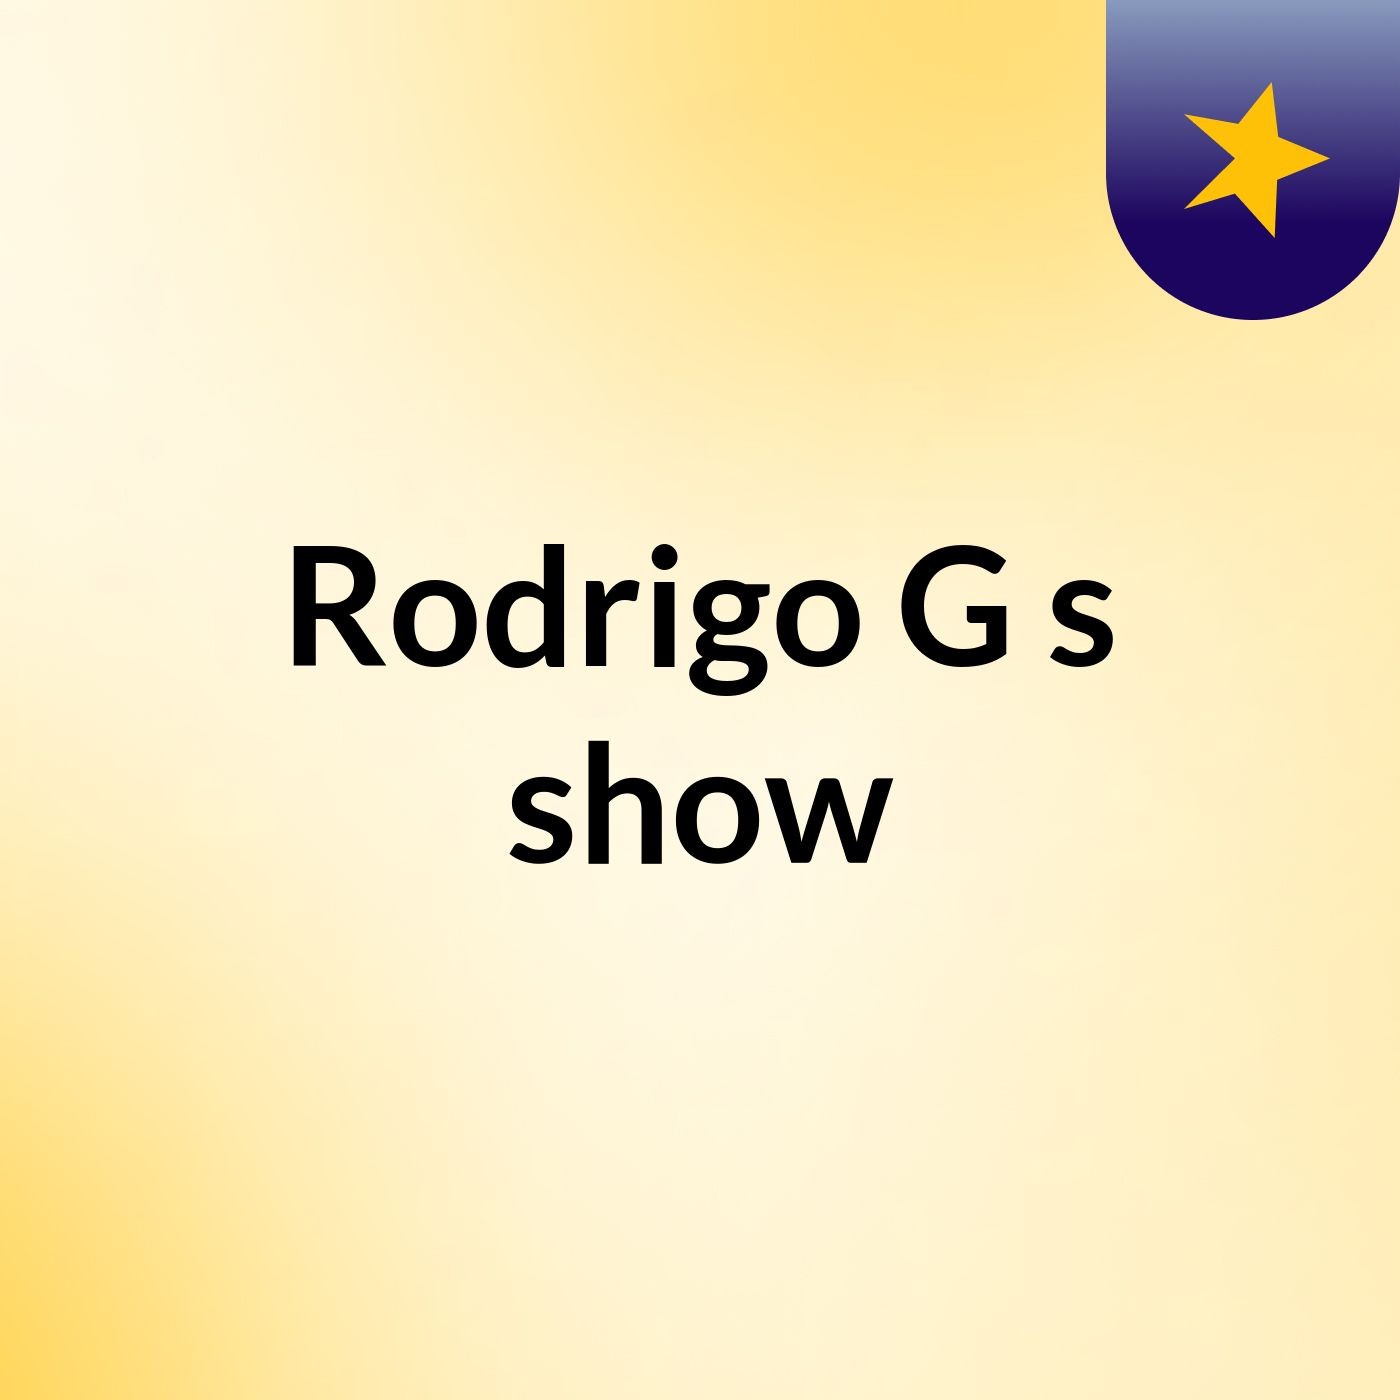 Rodrigo G's show